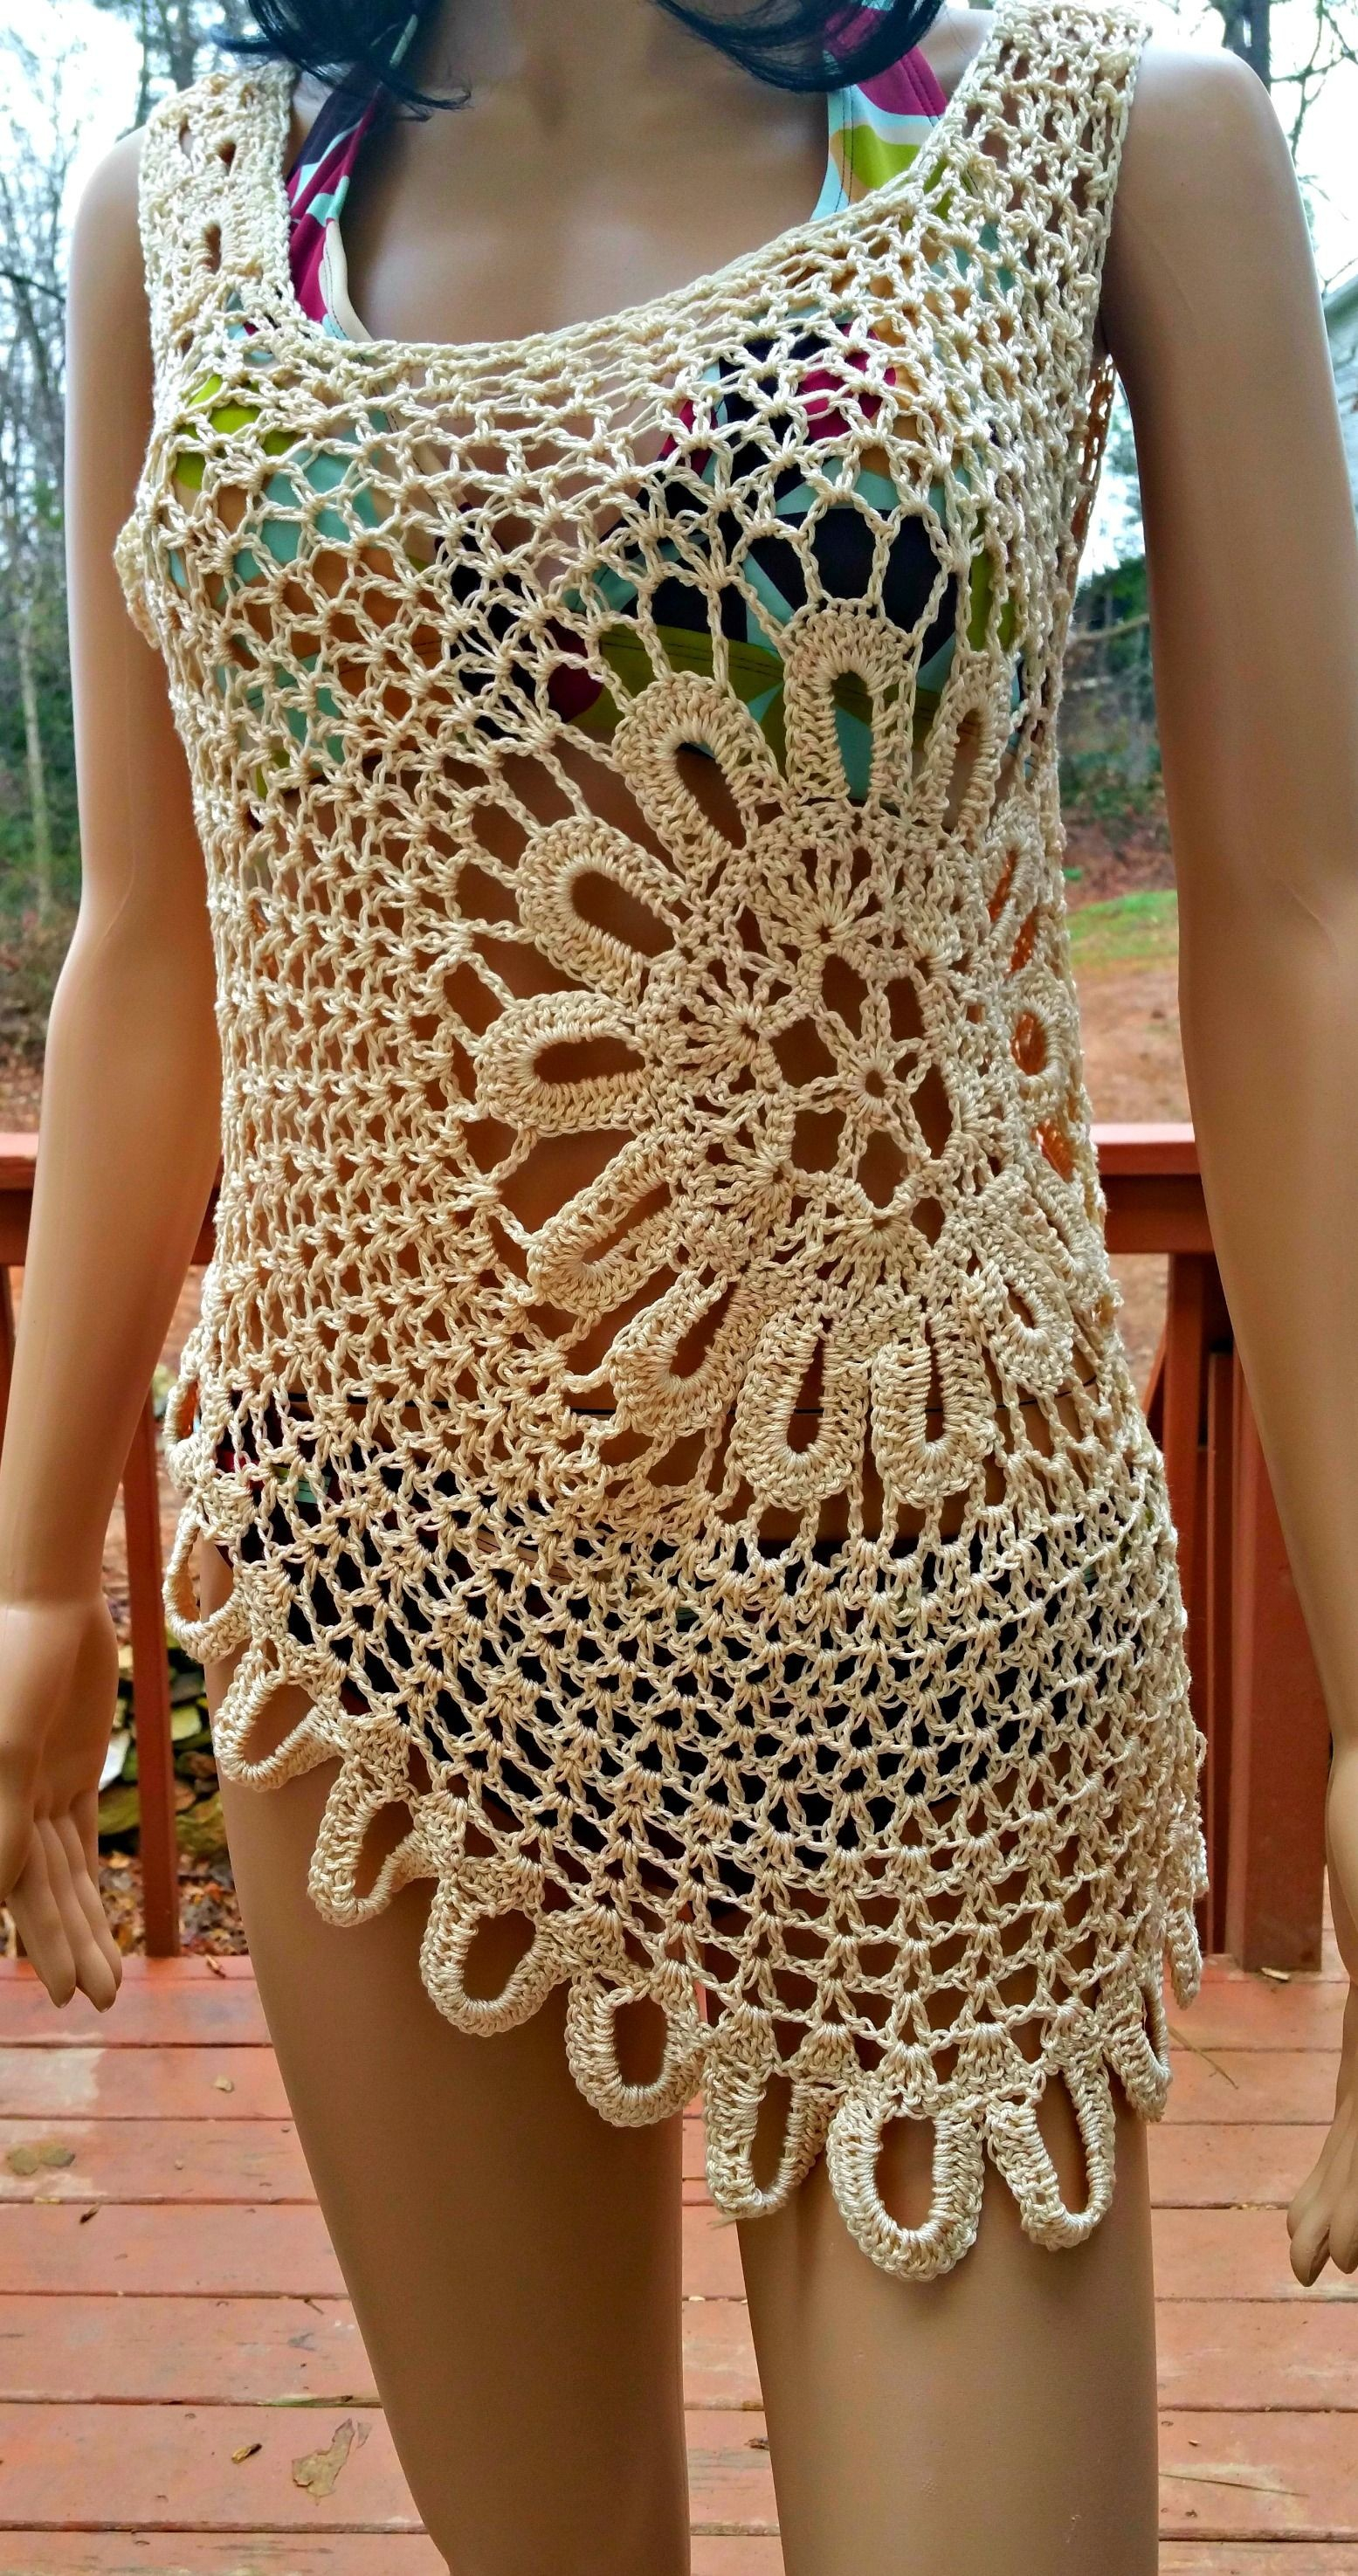 Crochet Wedding Dress Pattern Free Crochet Summer Dress Pattern Free Luxury Free Crochet Wedding Dress